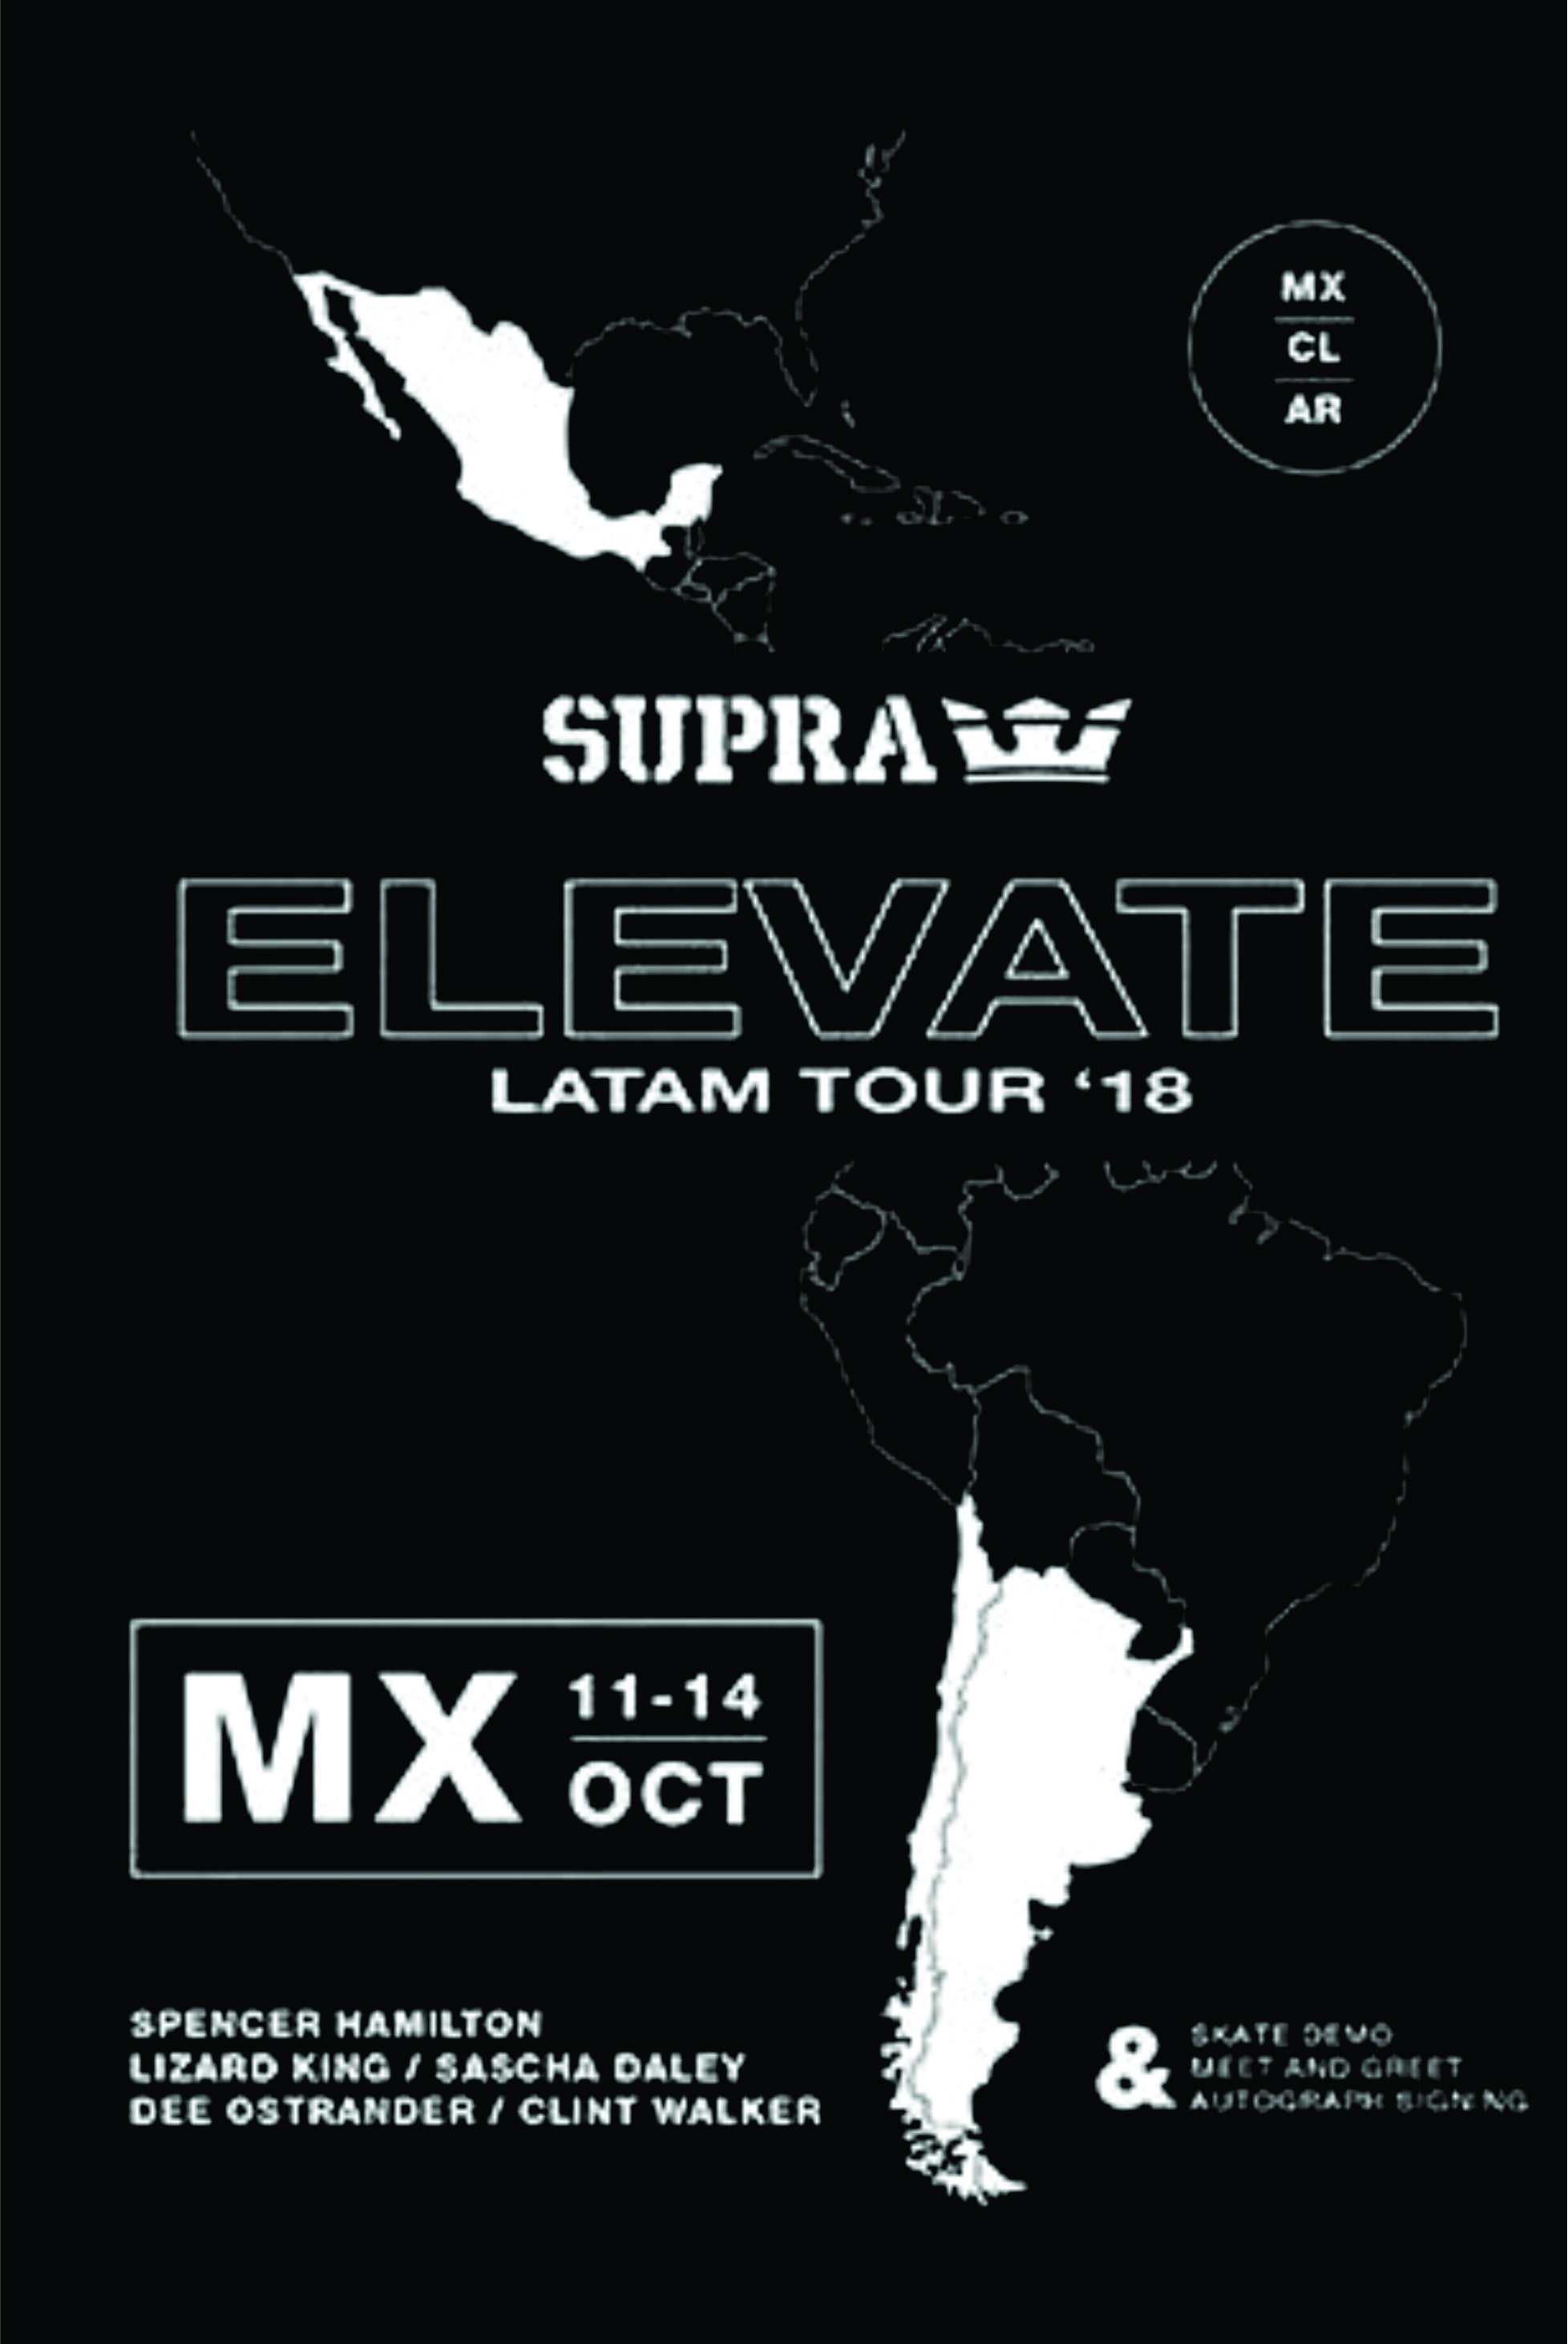 Supra - Elevate LatAm cover art